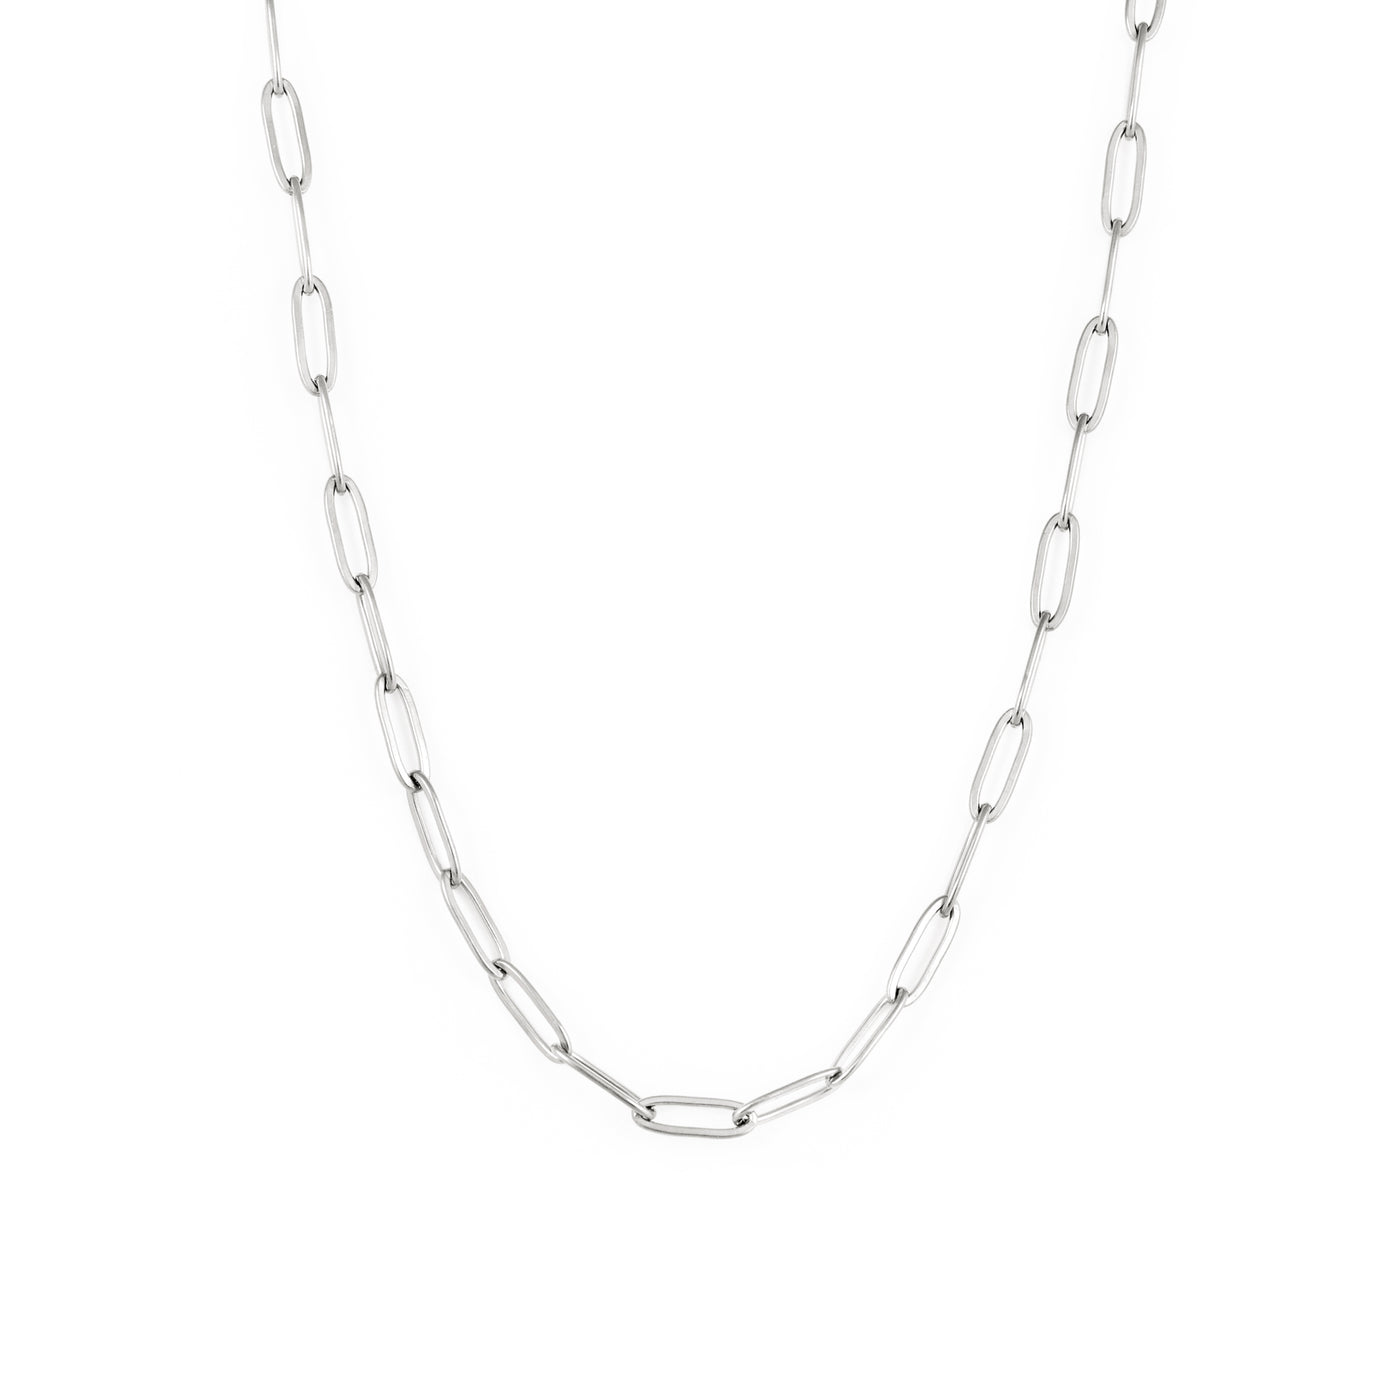 Paperclip Necklace - Silver Paperclip Necklace - Silver